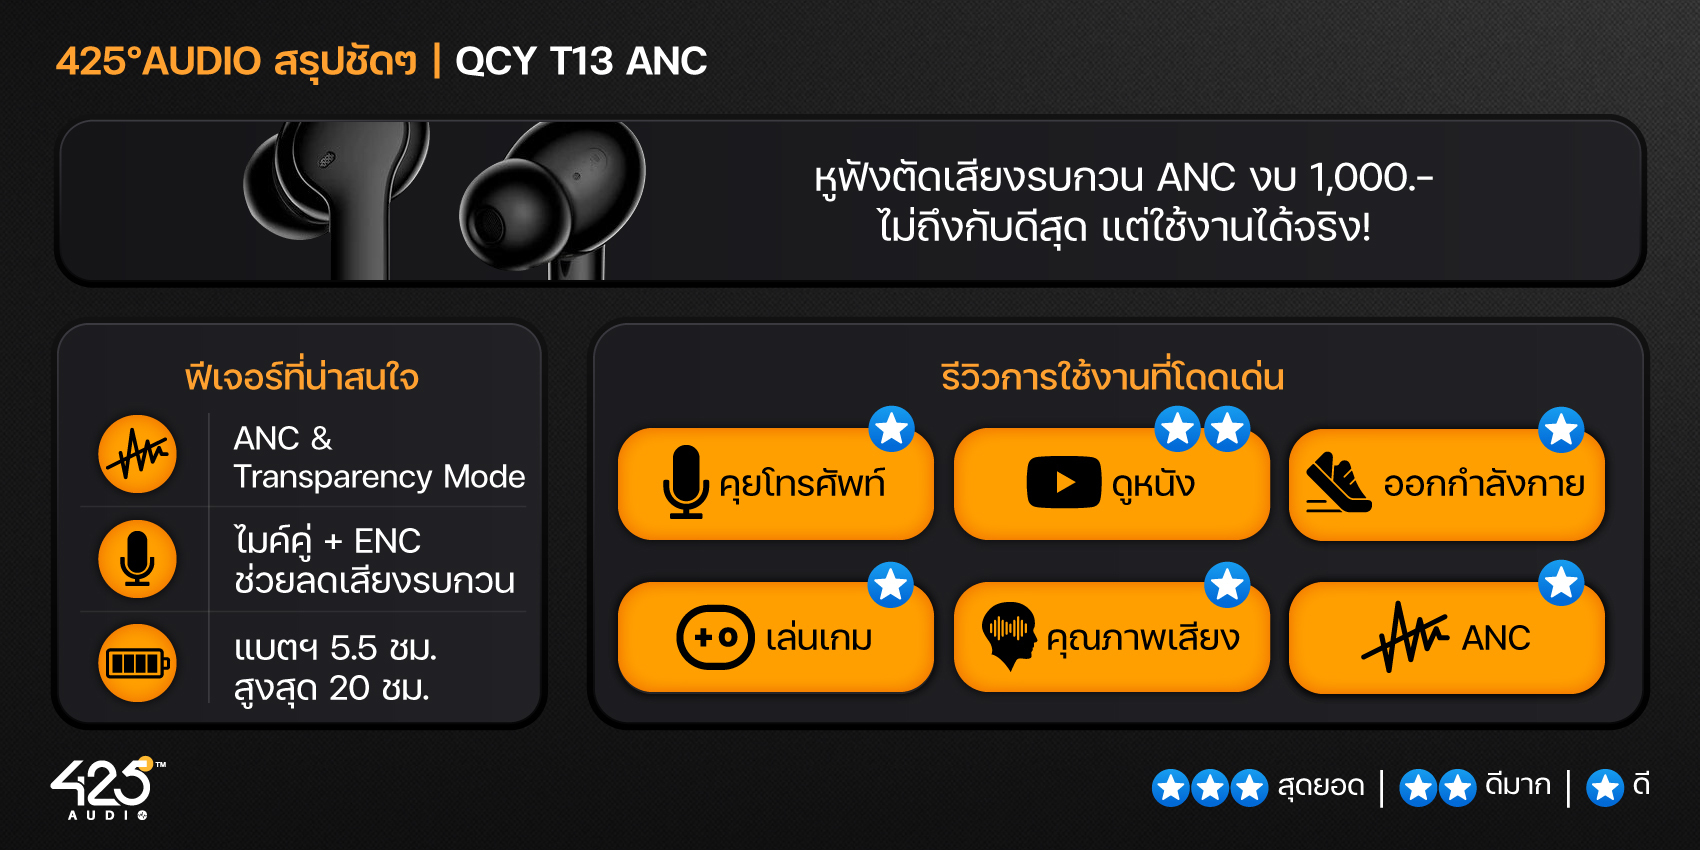 QCY T13 ANC,True Wireless,หูฟังไร้สาย,หูฟังบลูทูธ,หูฟัง in-ear,In-Ear,Quad-Mic,หูฟังเสียงดีราคาถูก